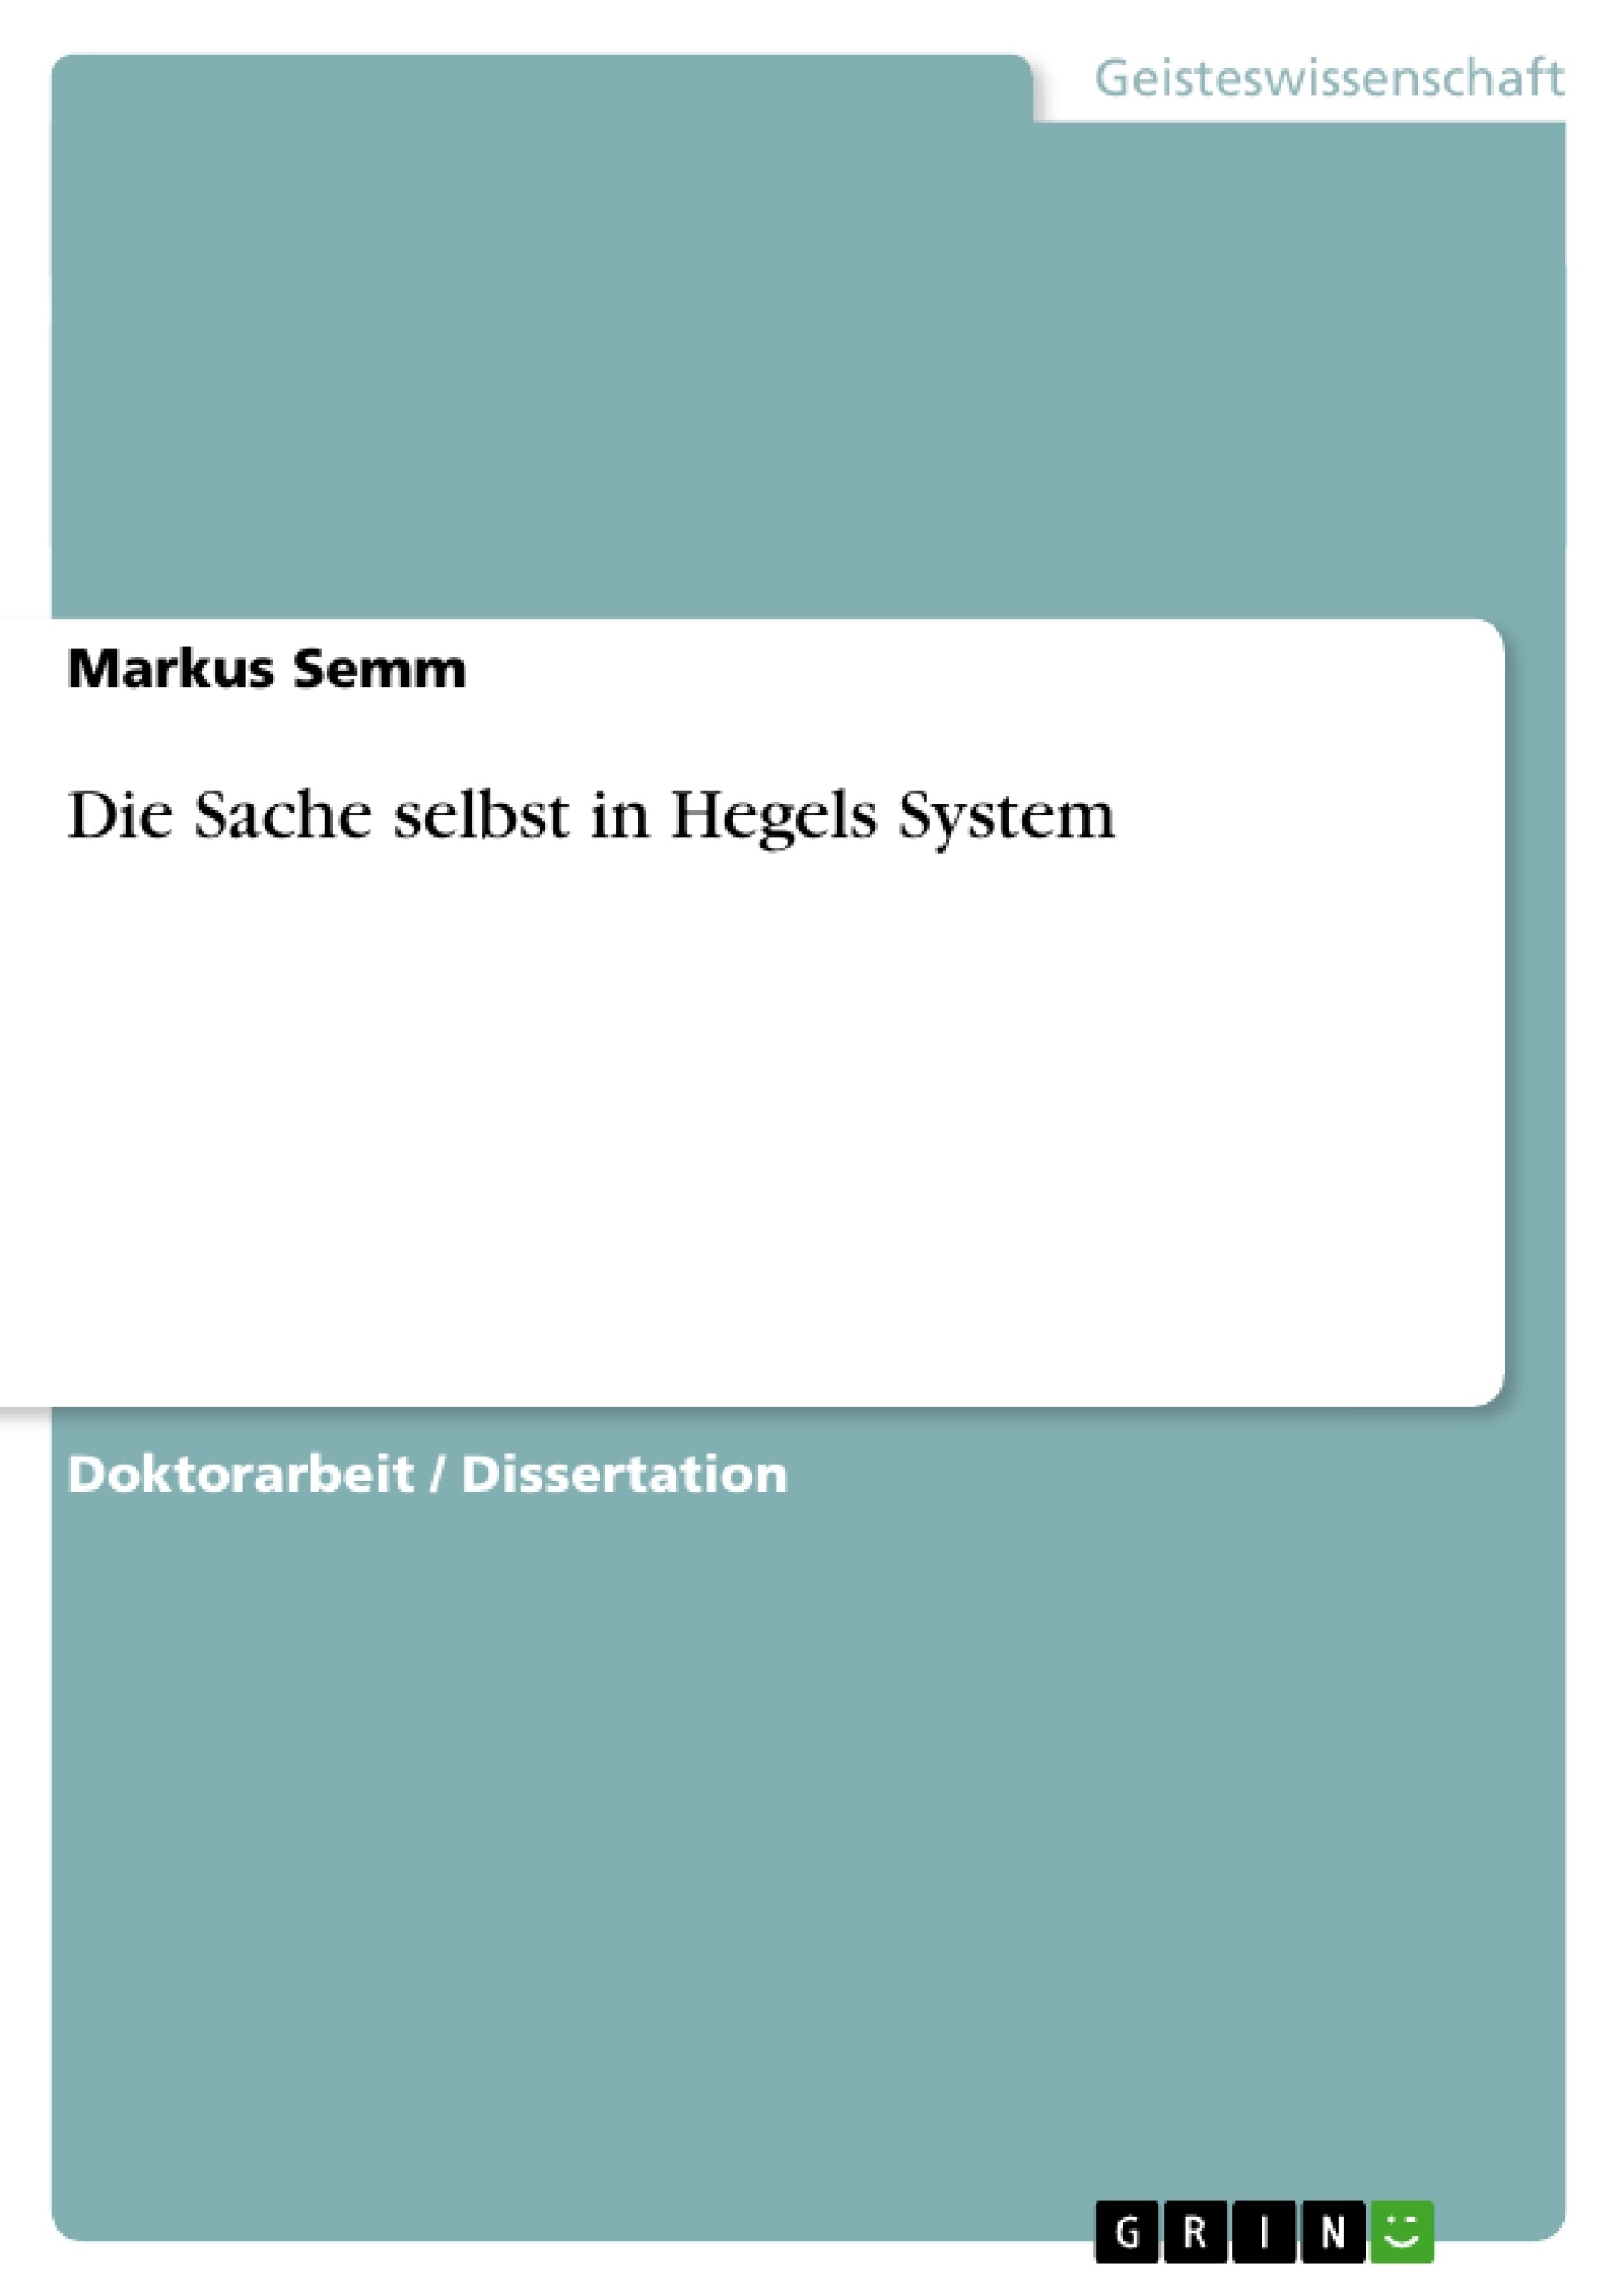 Título: Die Sache selbst in Hegels System